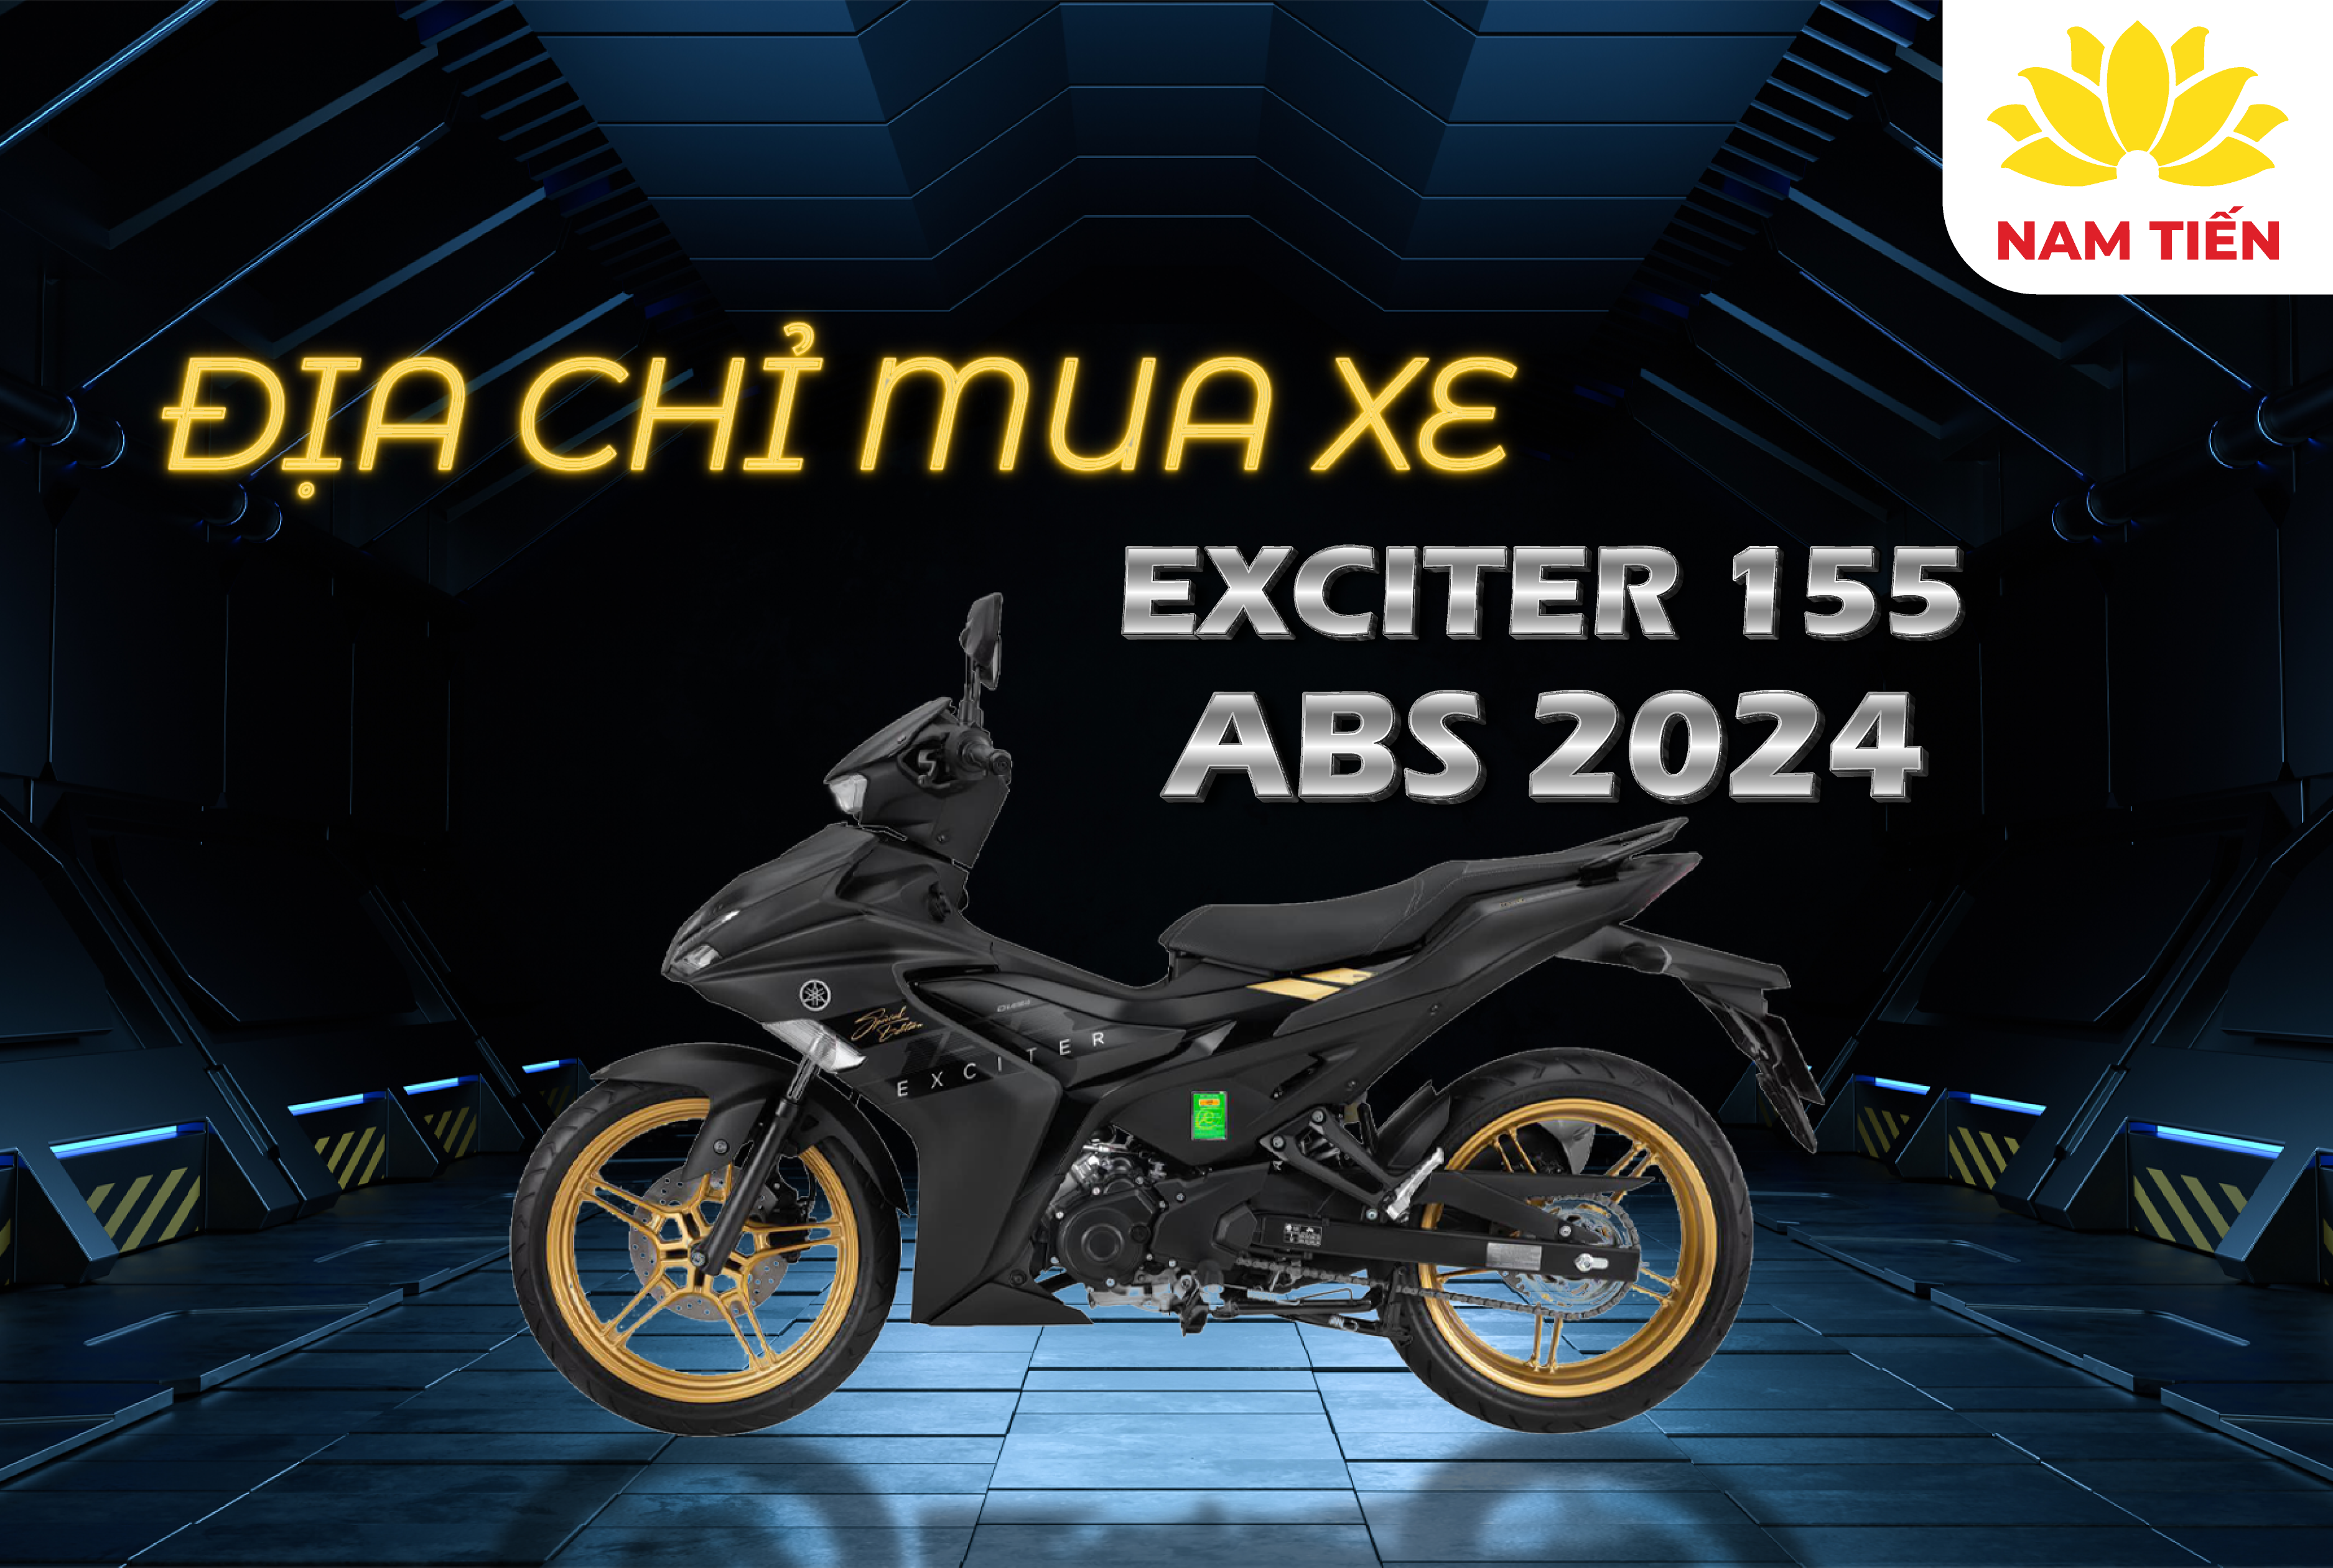 Địa chỉ mua xe Exciter 155 ABS 2024